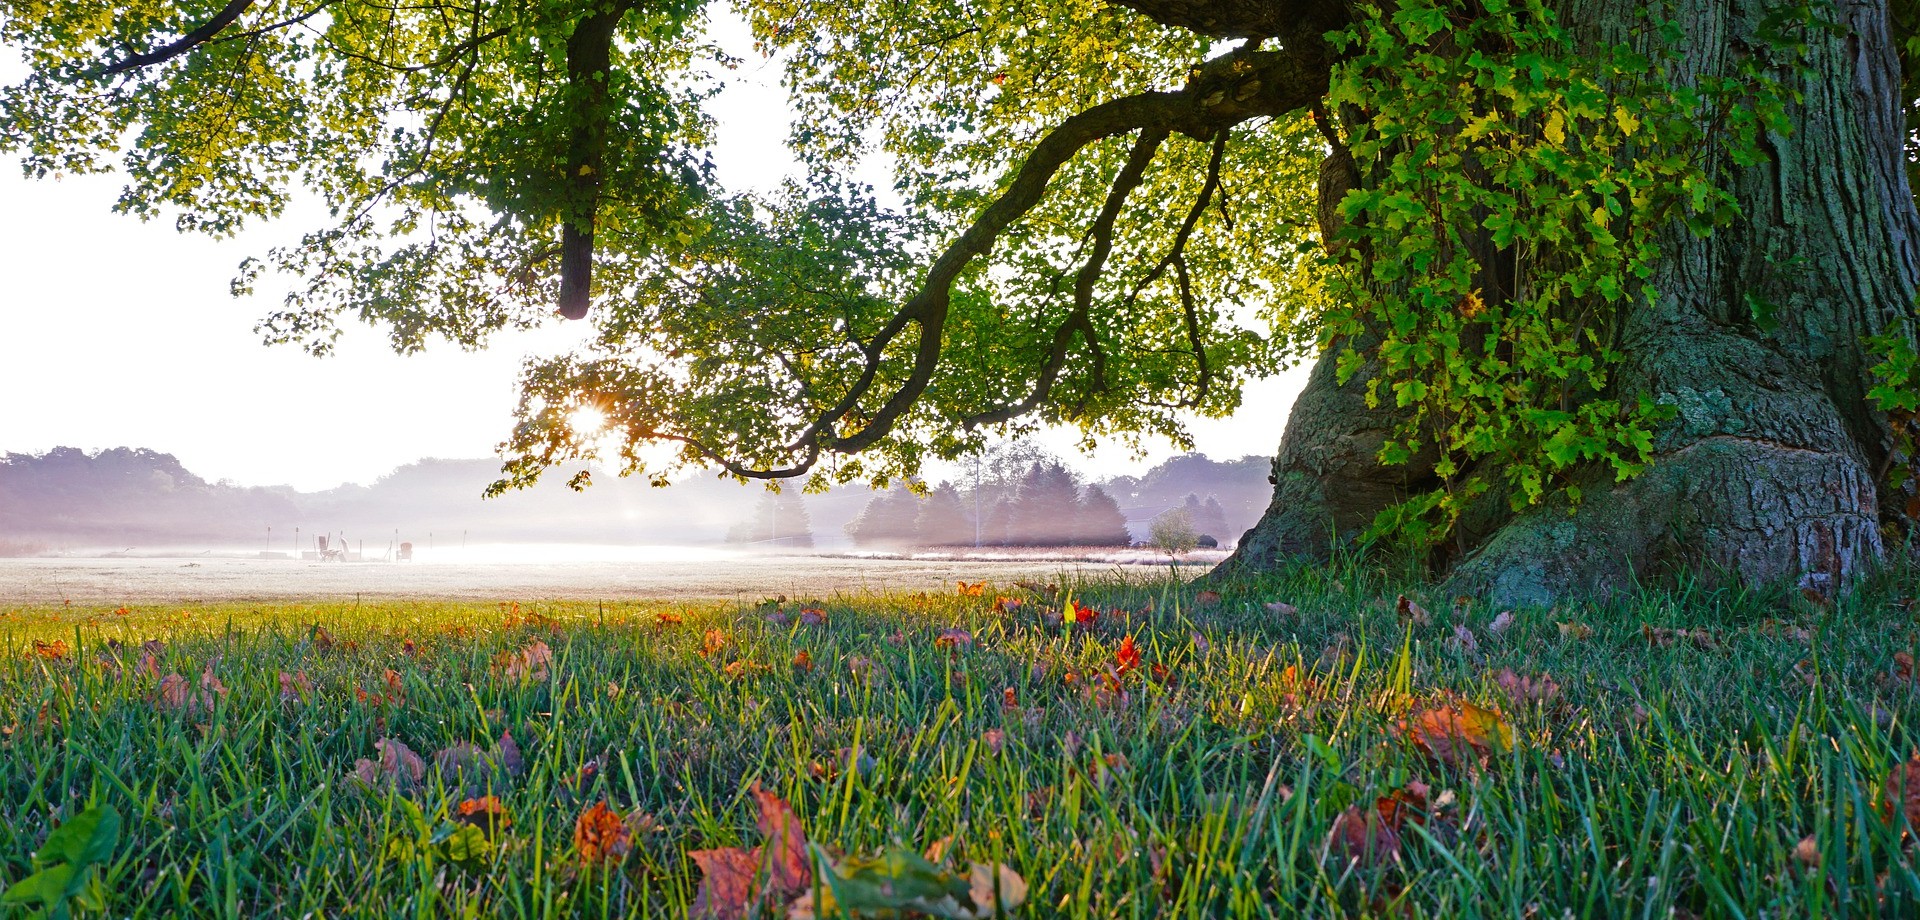 Eine große, alte Eiche steht fest verwurzelt auf einer grünen Blumenwiese, im Hintergrund beleuchtet die Sonne ein Feld